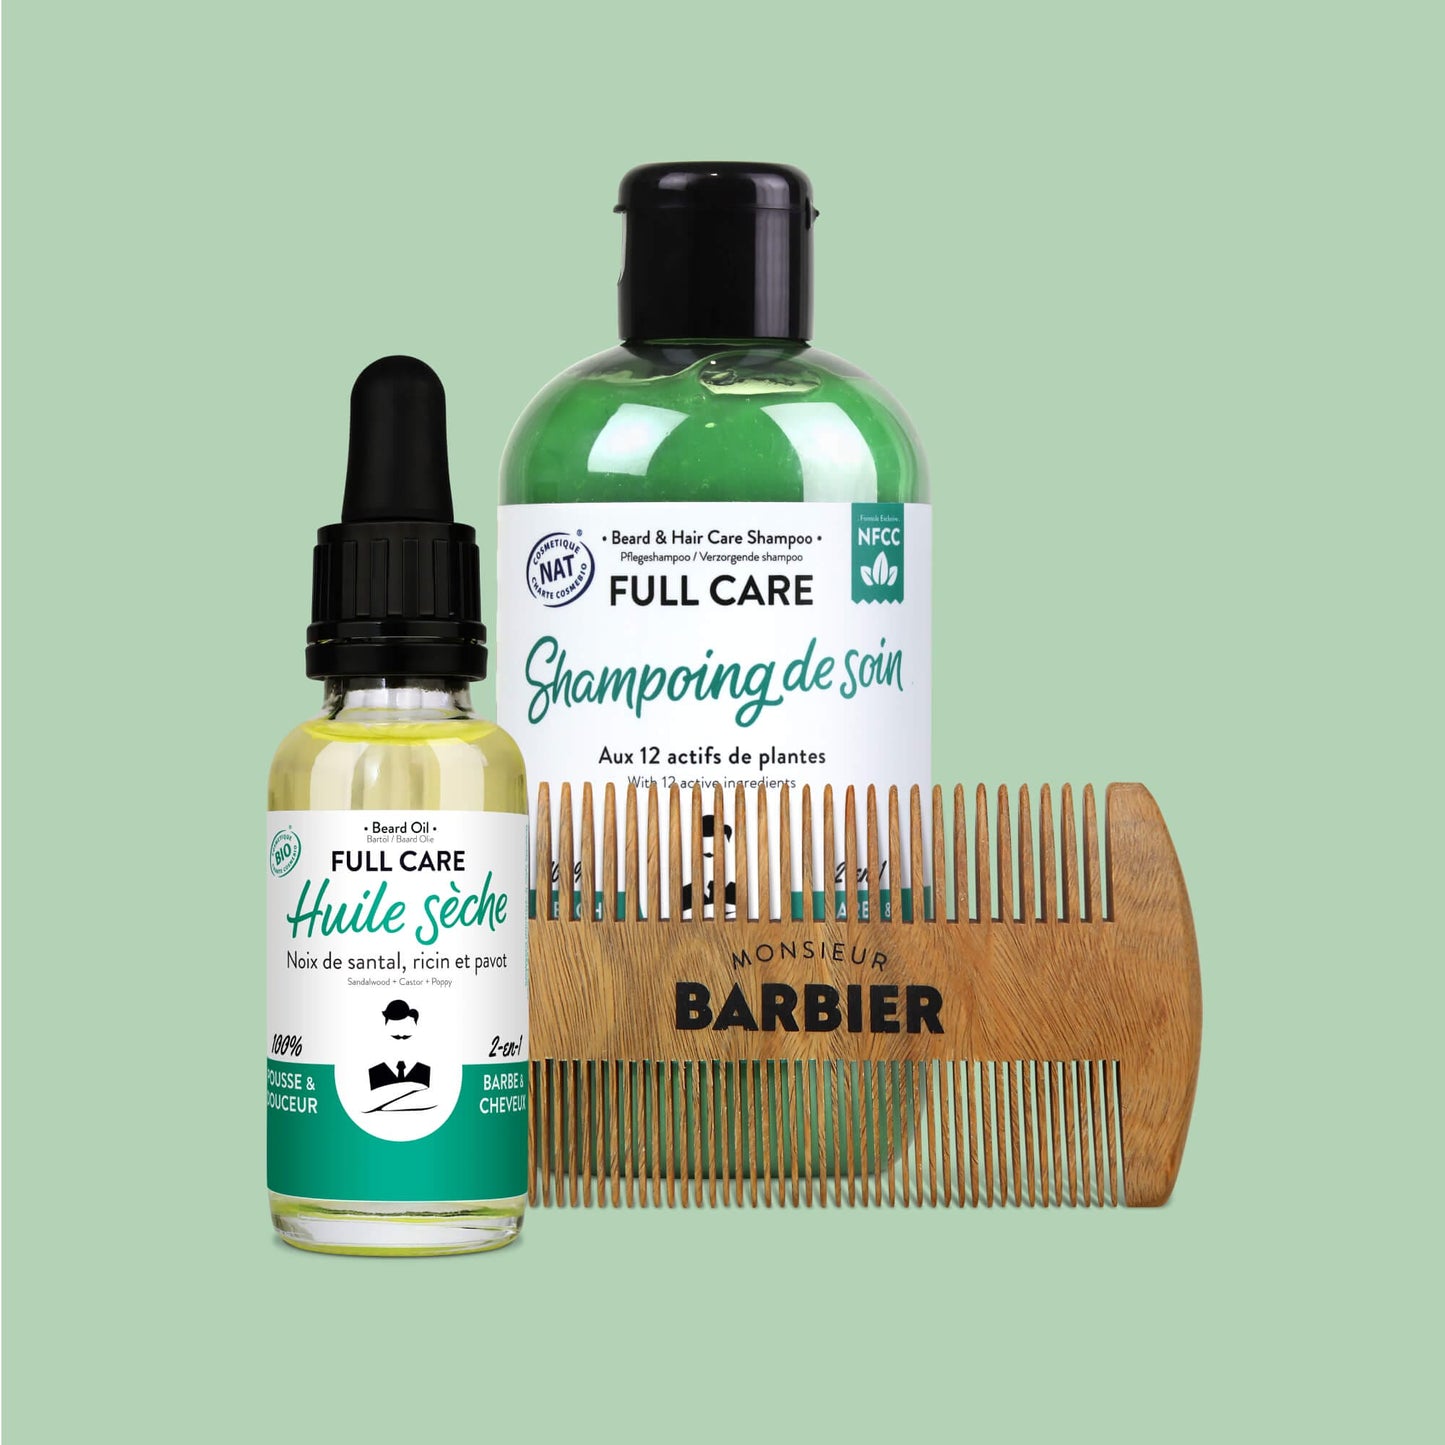 Produits de soin pour la barbe et les cheveux Monsieur BARBIER, comprenant un flacon de shampoing vert, une huile sèche en bouteille de verre, et un peigne en bois naturel, sur fond vert.